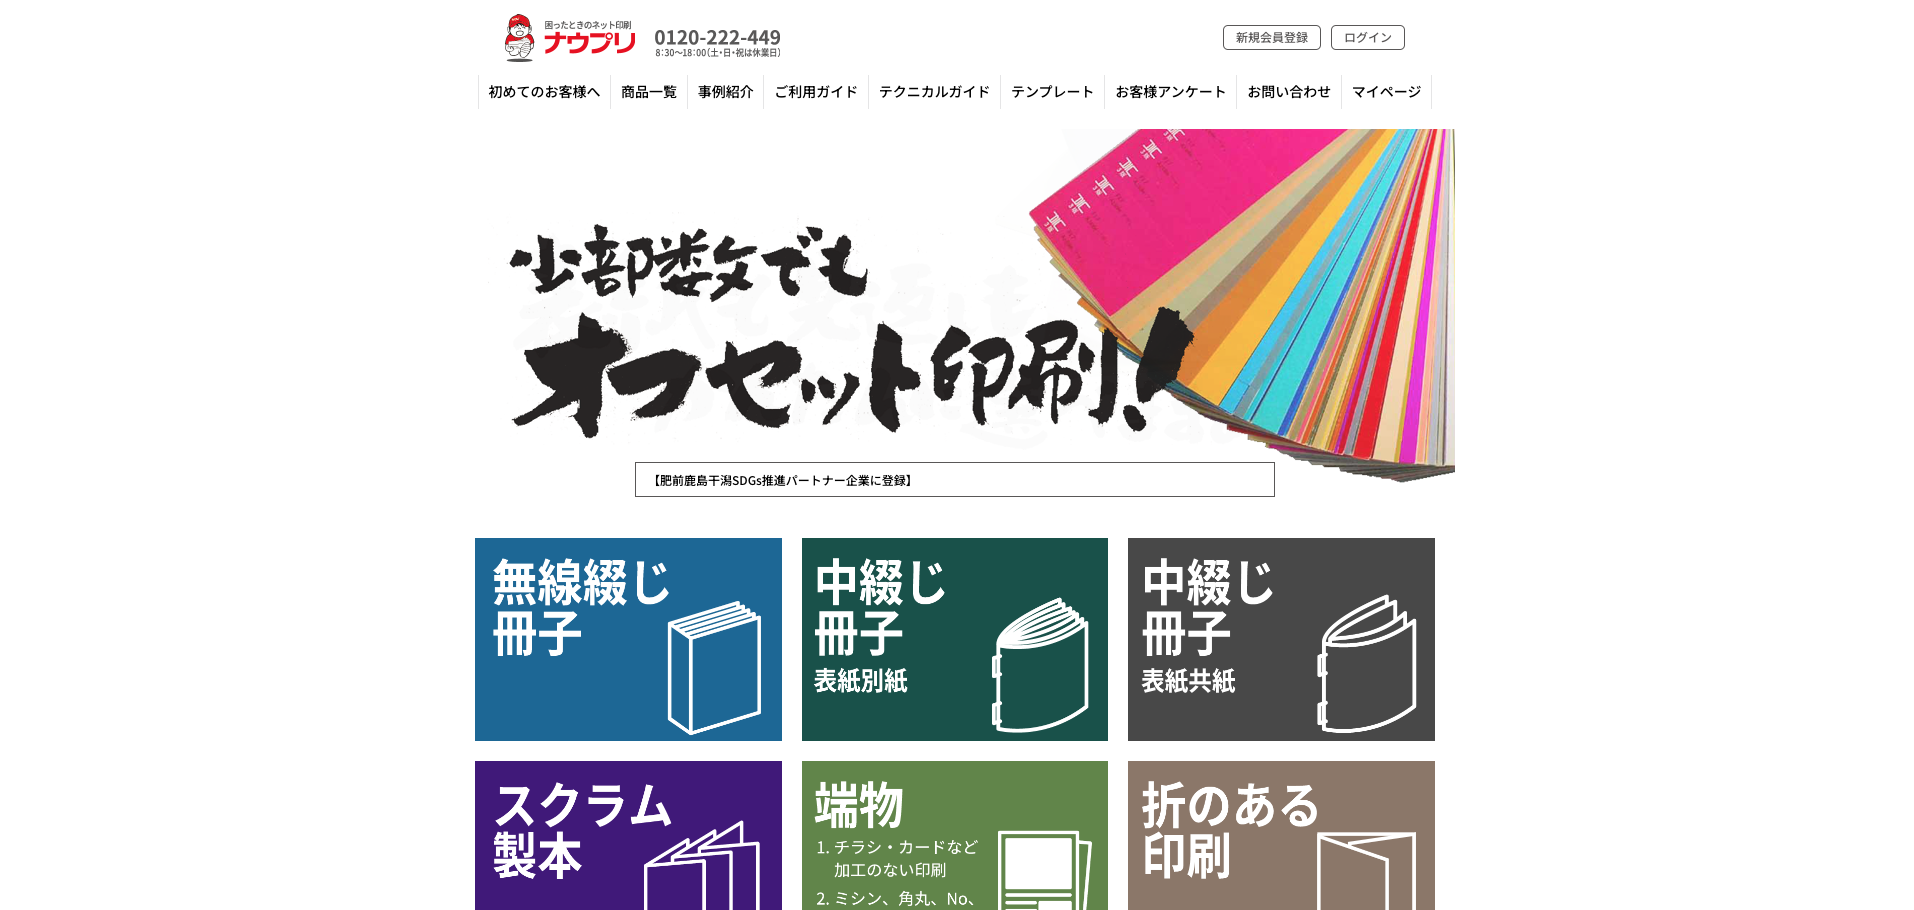 松浦印刷株式会社のネット印刷 ナウプリサービス